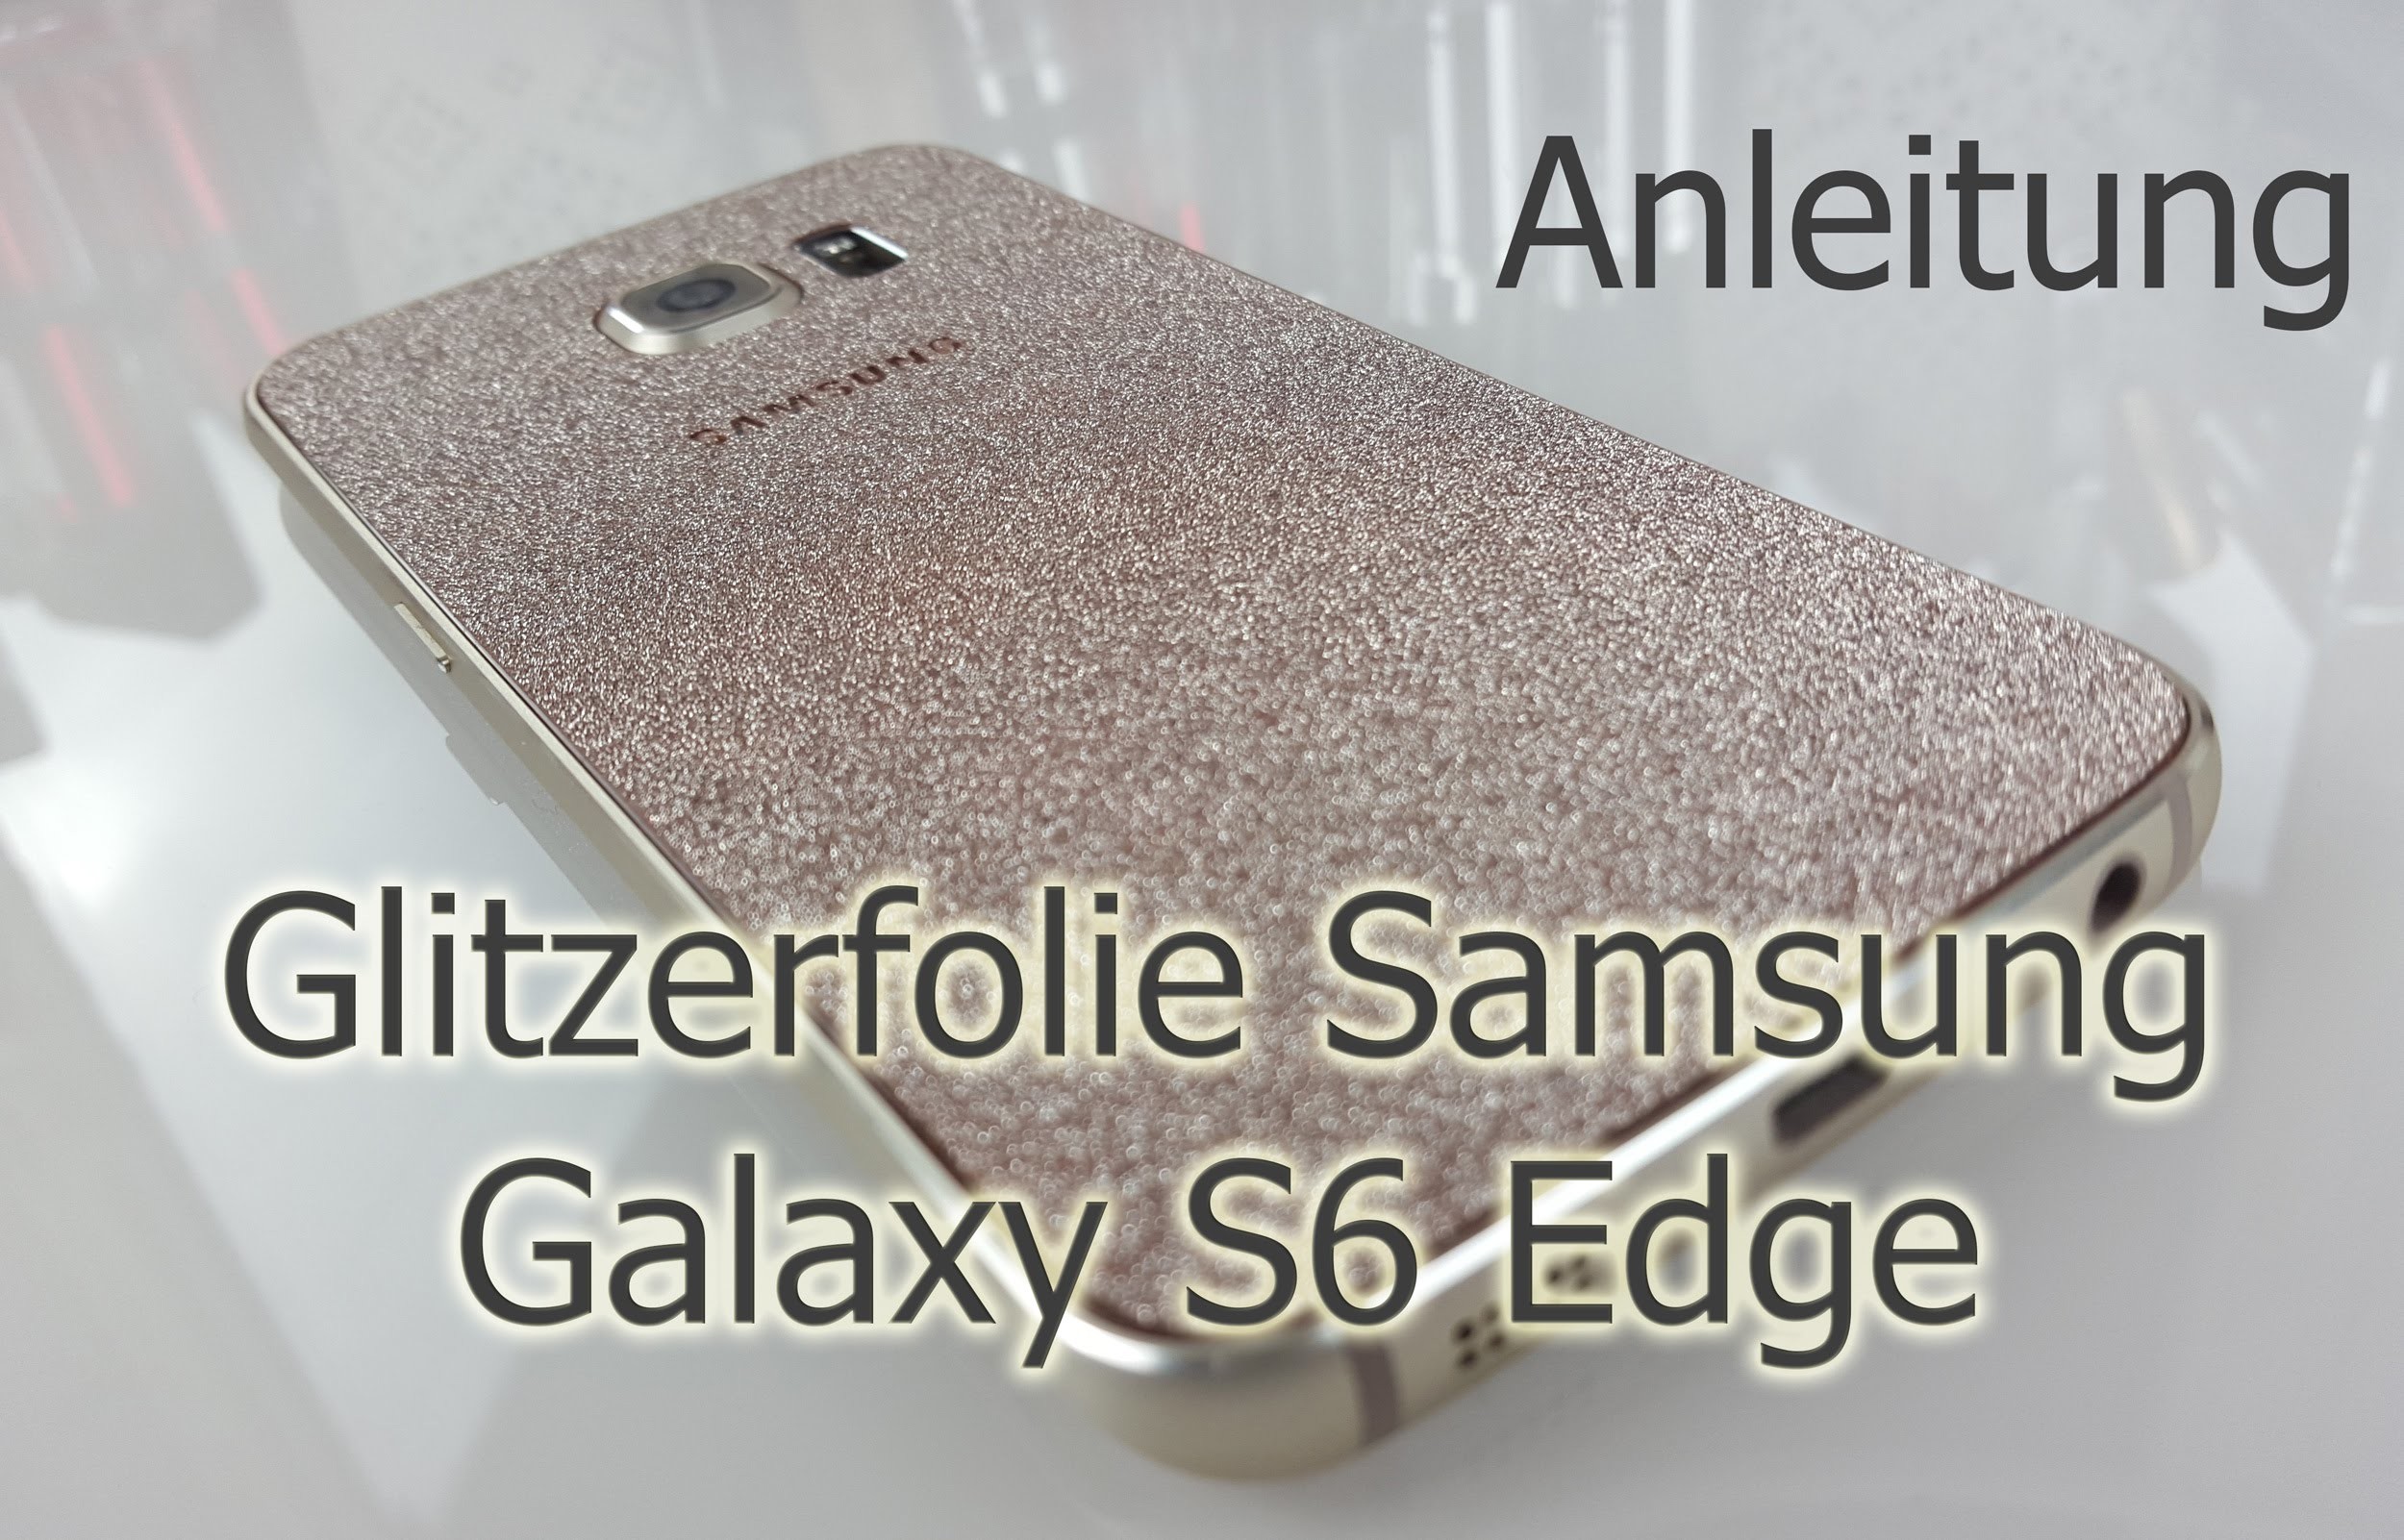 DIY Glitzerfolie Samsung Galaxy S6 Edge gold (Anleitung) | Glitter Skin